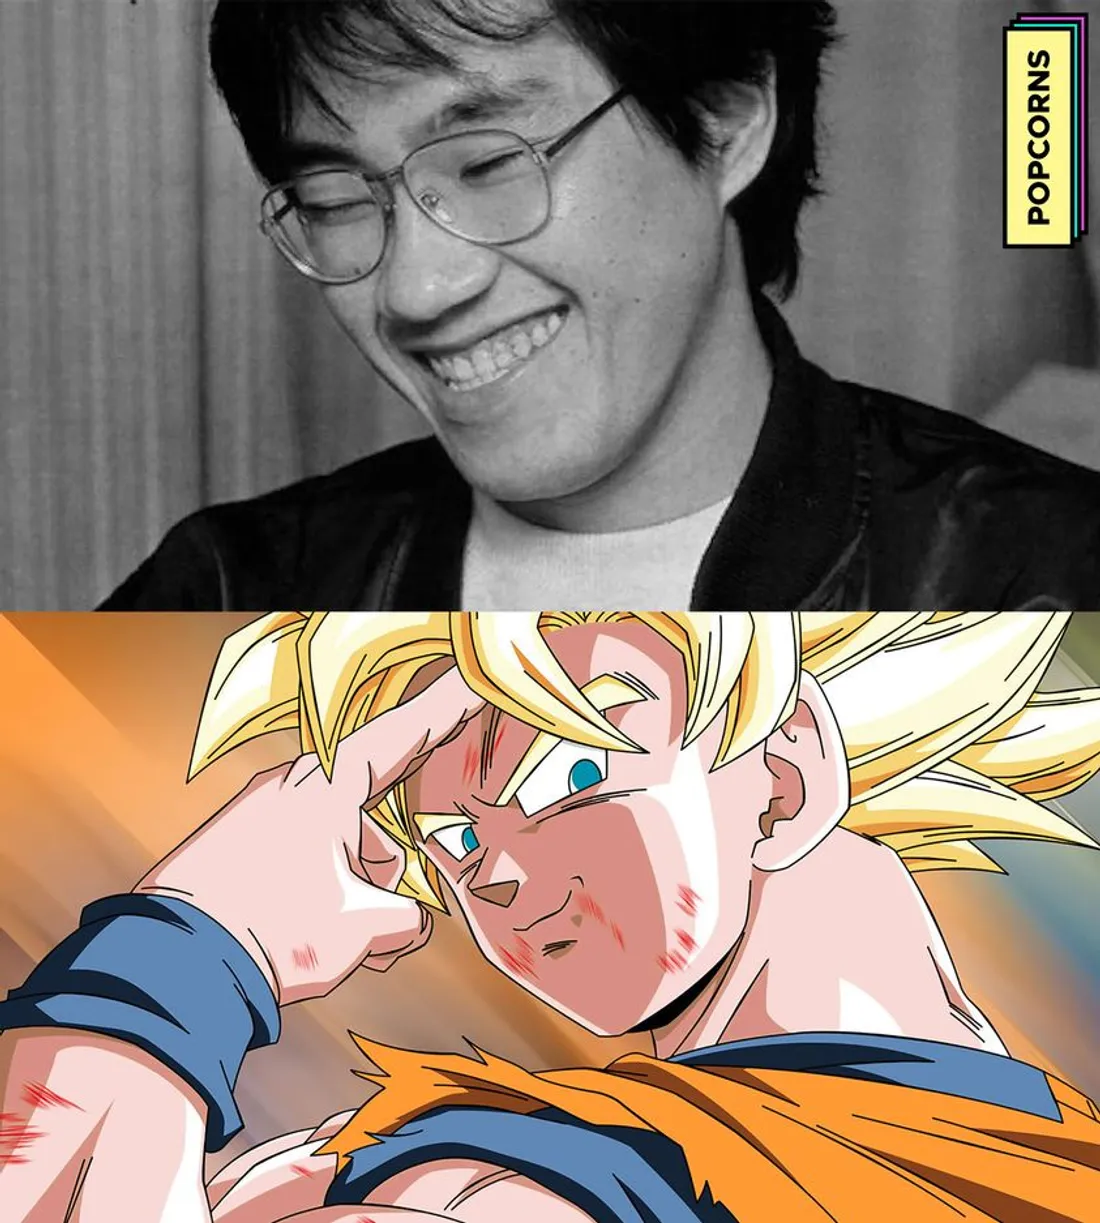 [ HOMMAGE ] Akira Toriyama, le créateur de Dragon Ball, vient de nous quitter à l'âge de 68 ans.